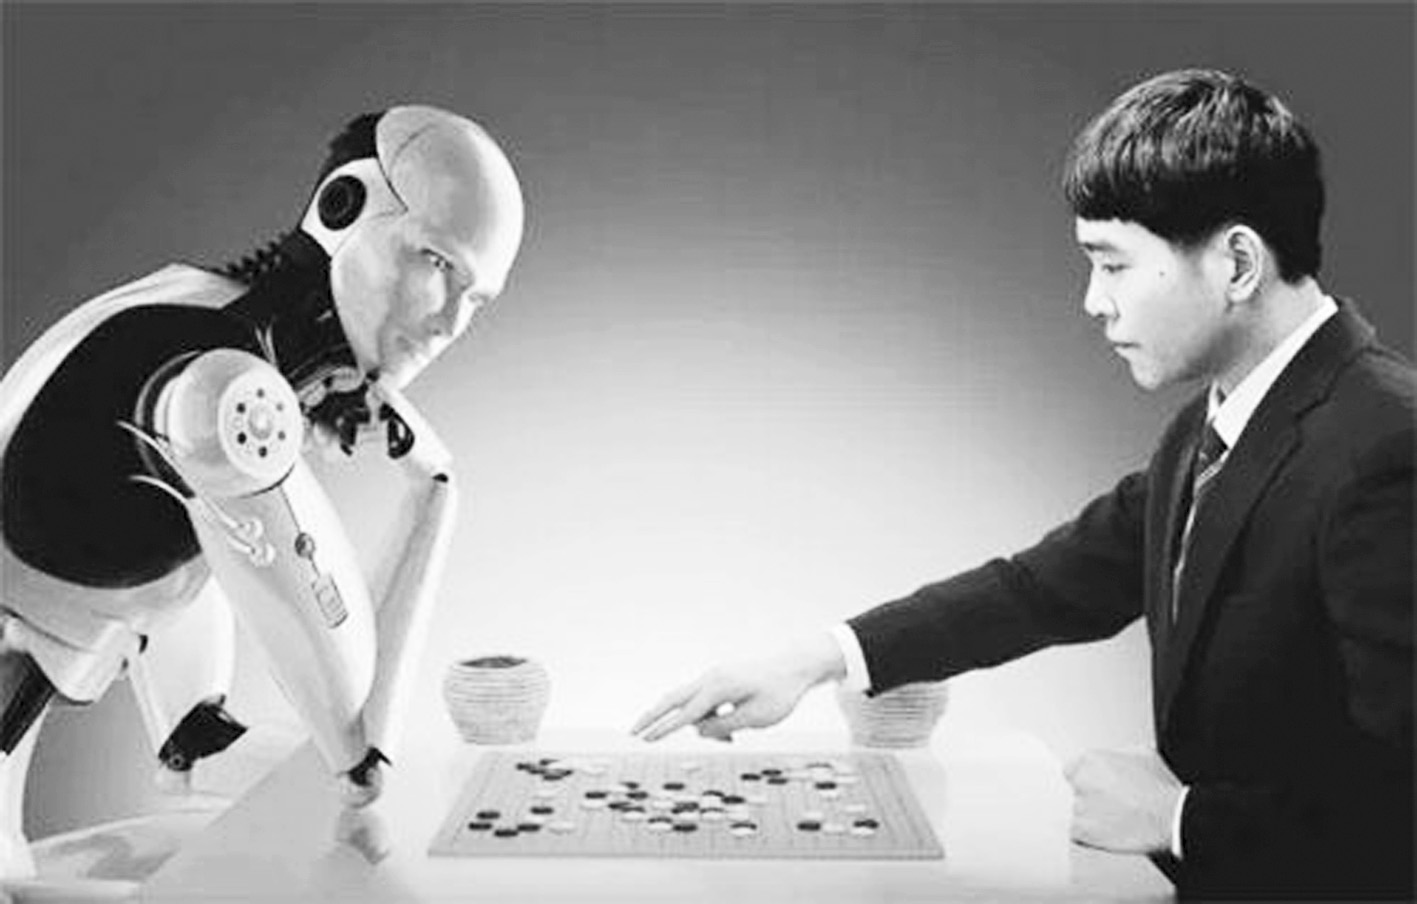 春晚机器人  机器人代理加盟  阿尔法智能机器人   春晚机器人代理